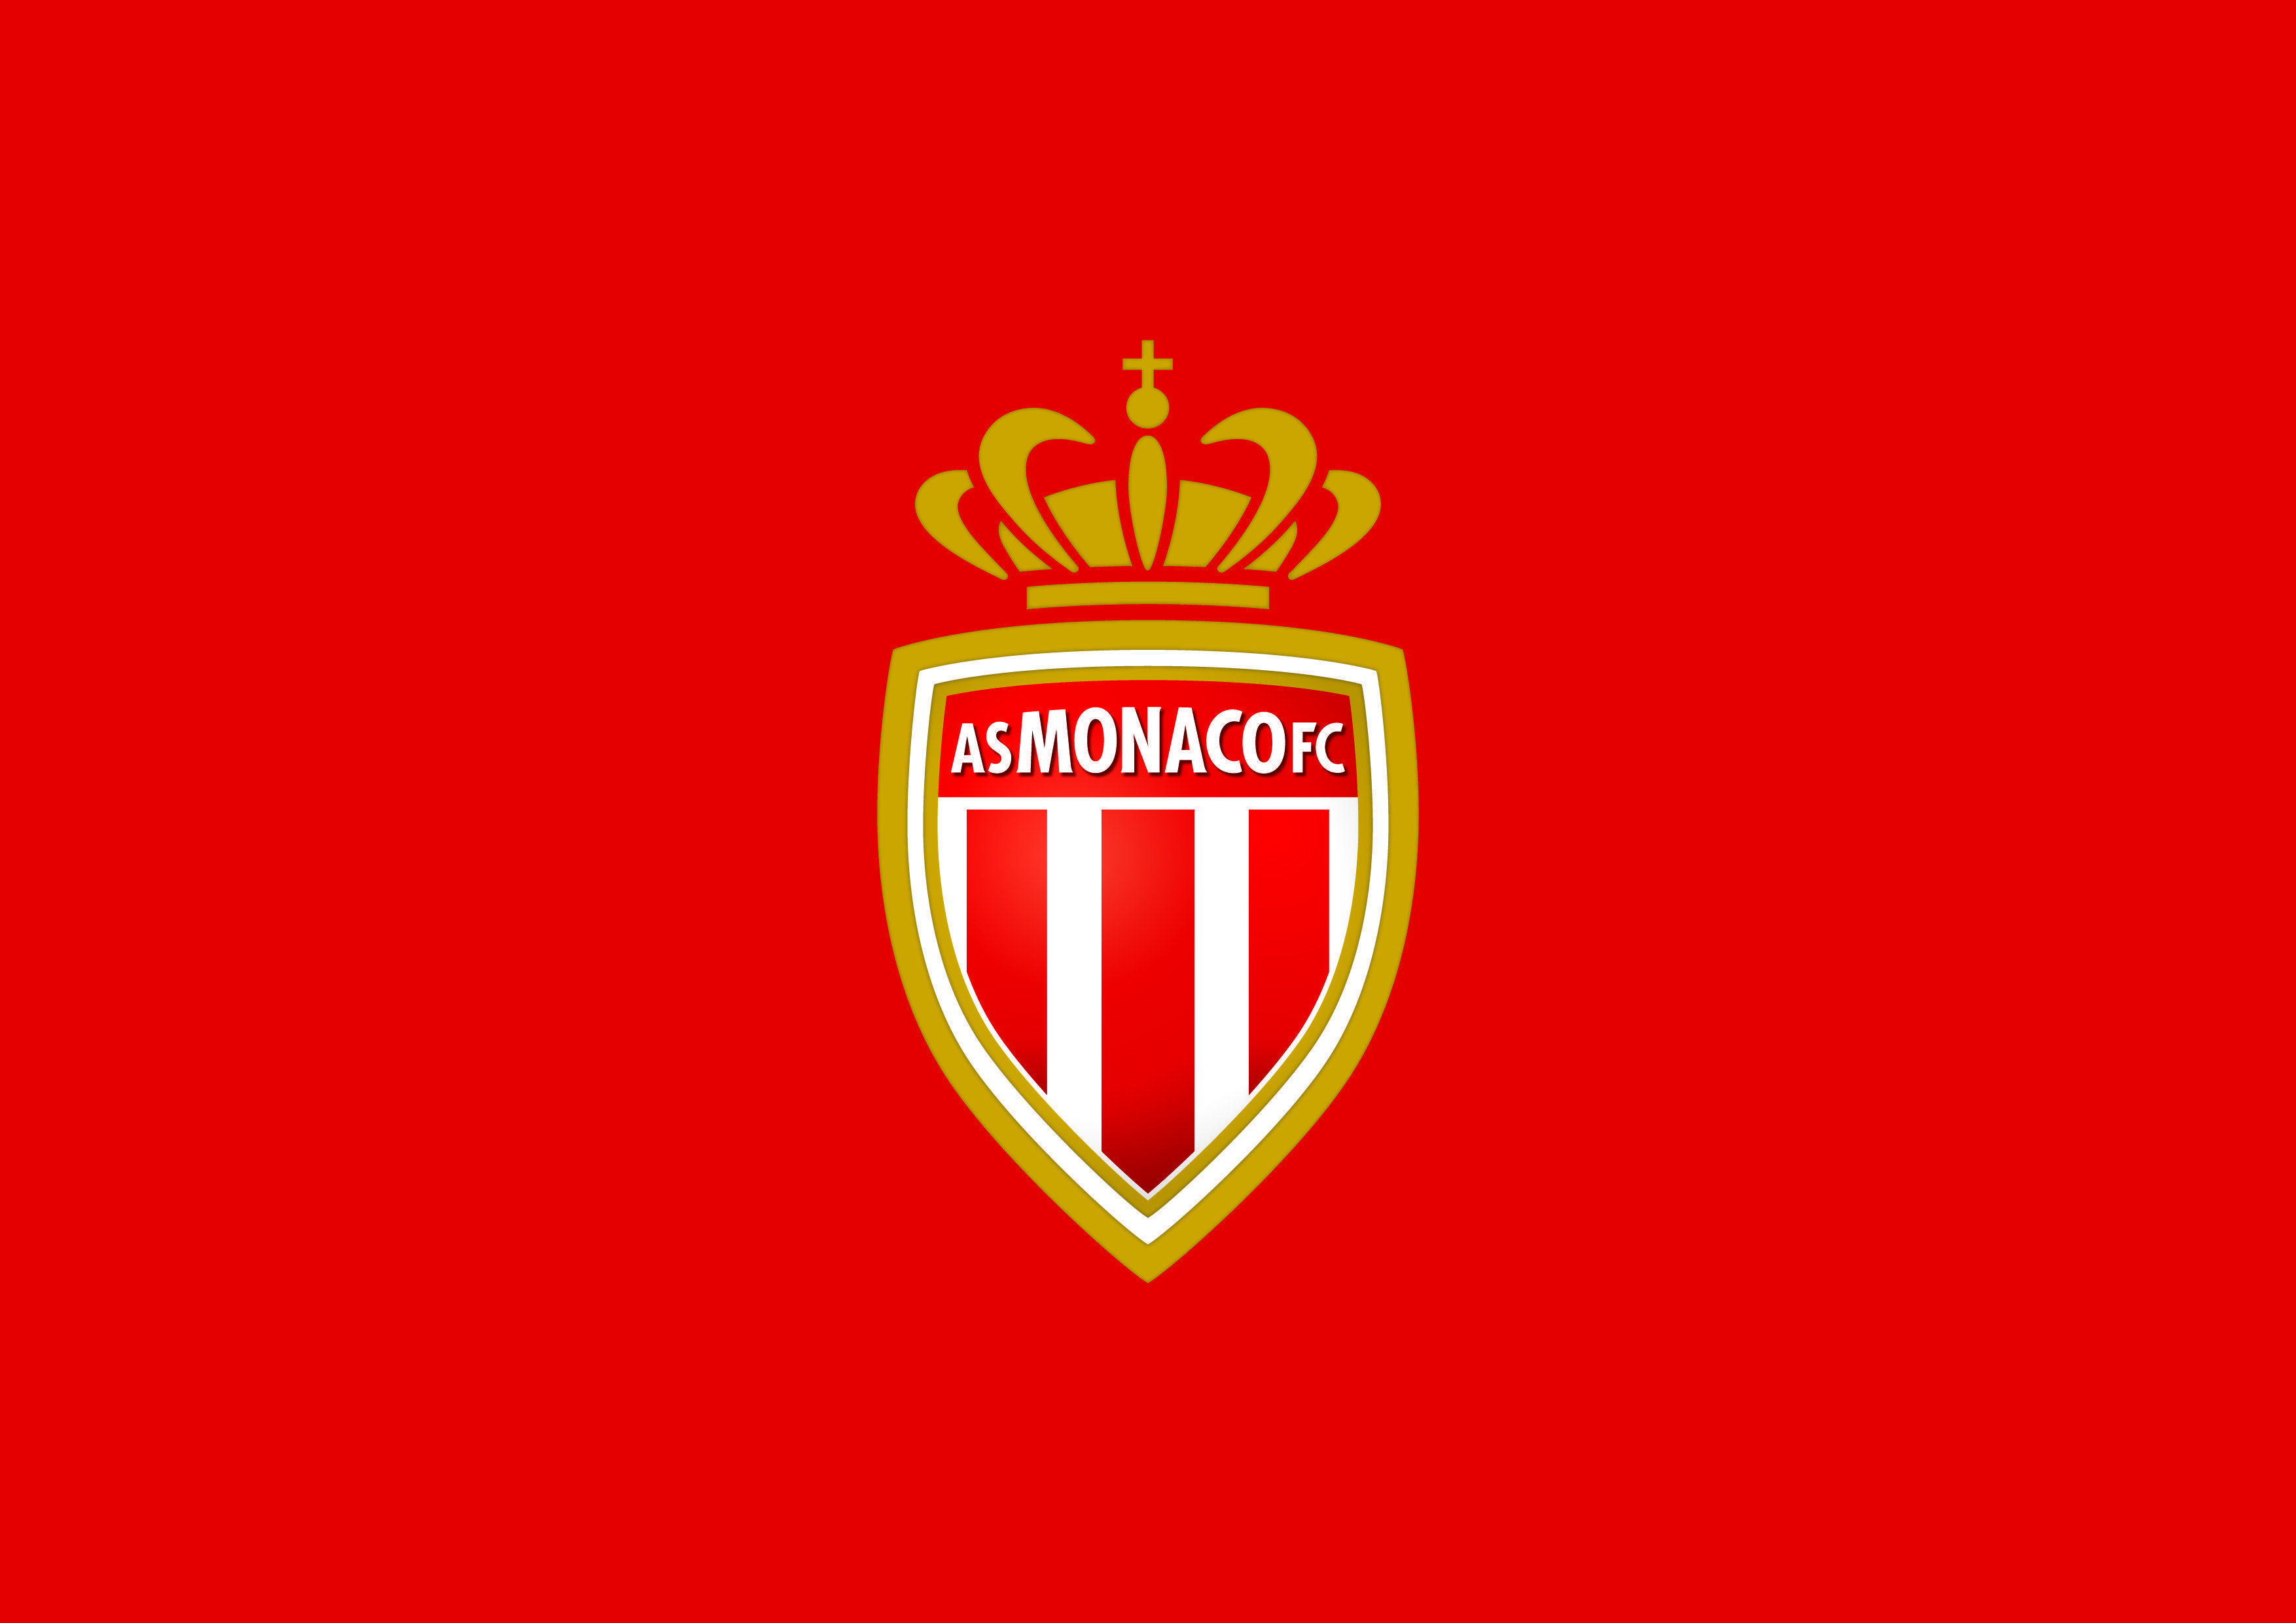 Official visuals AS Monaco FC. Club. AS Monaco FC